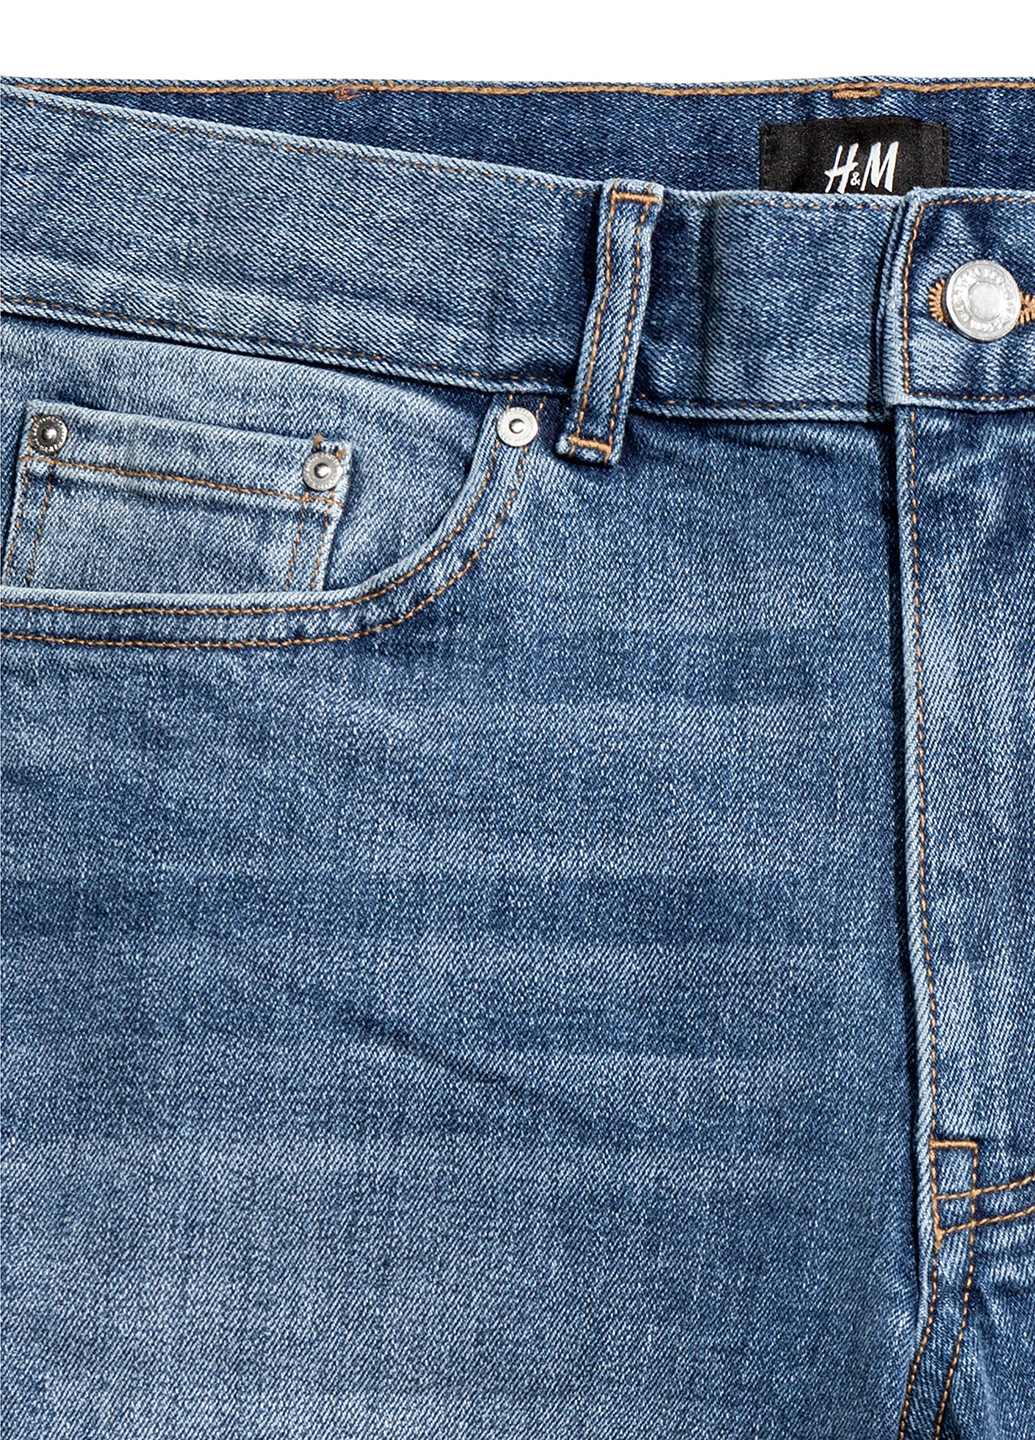 Шорты H&M бермуды однотонные синие джинсовые хлопок